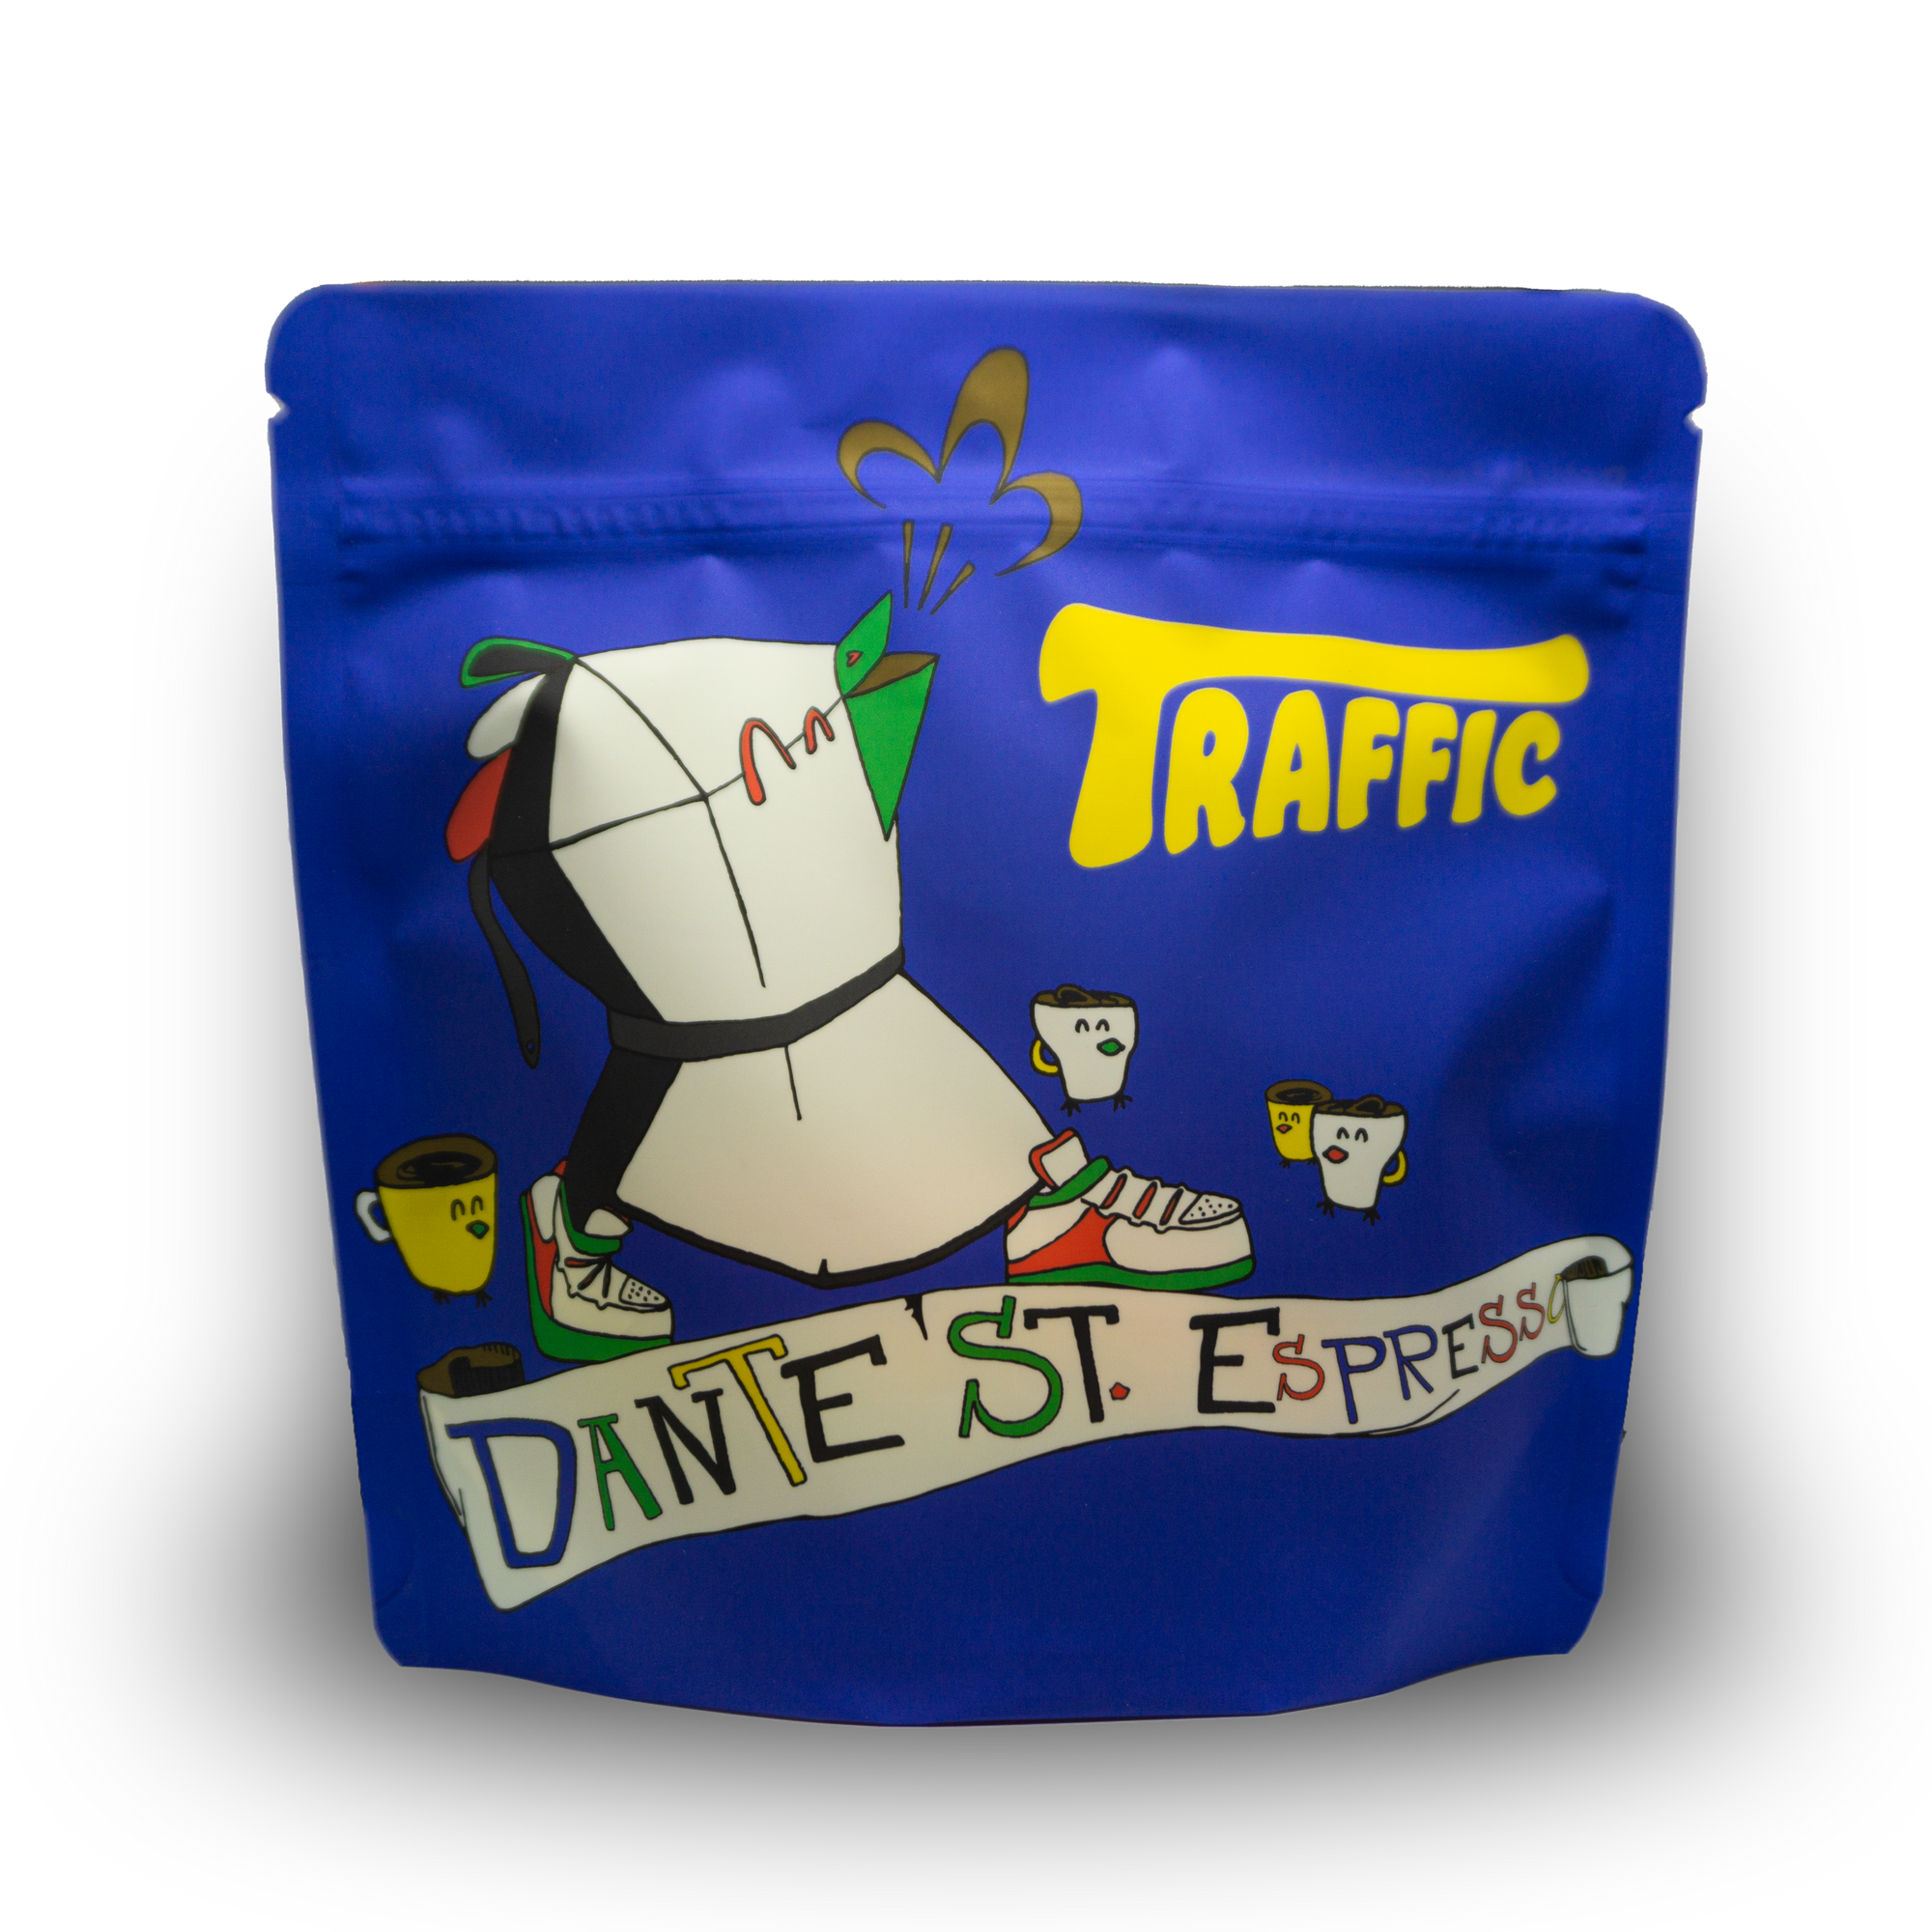 Dante Street Espresso